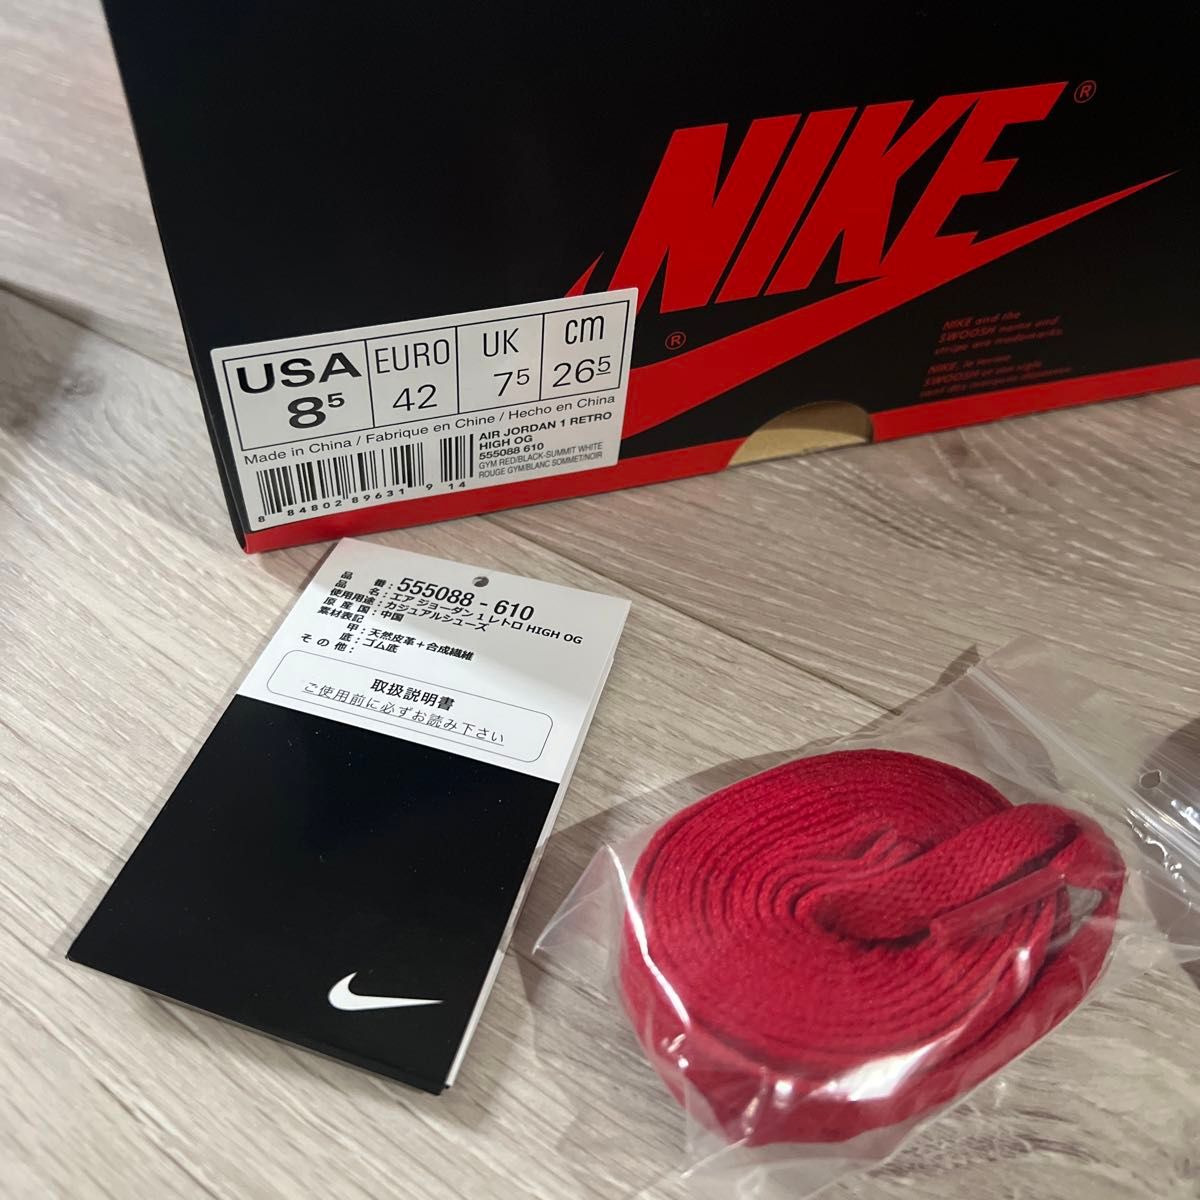 Nike Air Jordan1 Retro High OG "Bred Toe